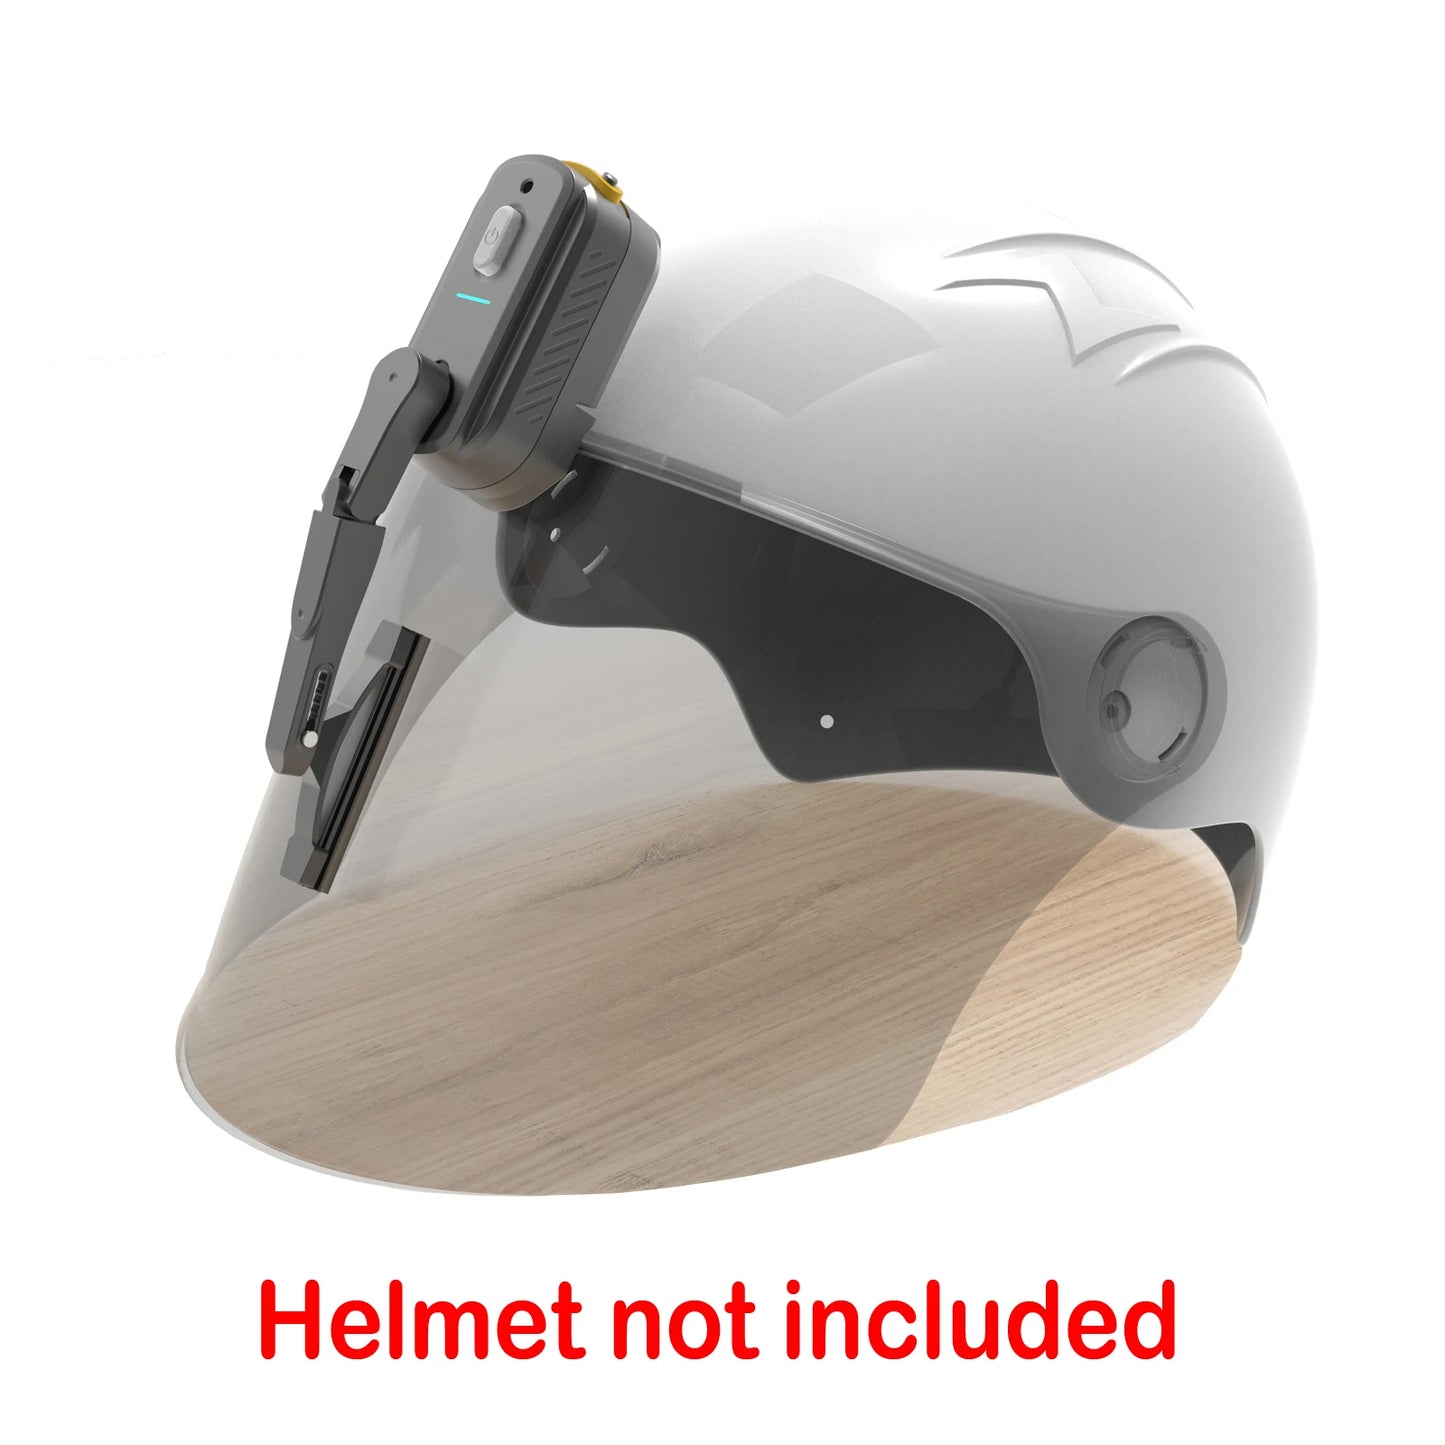 Motorcycle Helmet Wiper